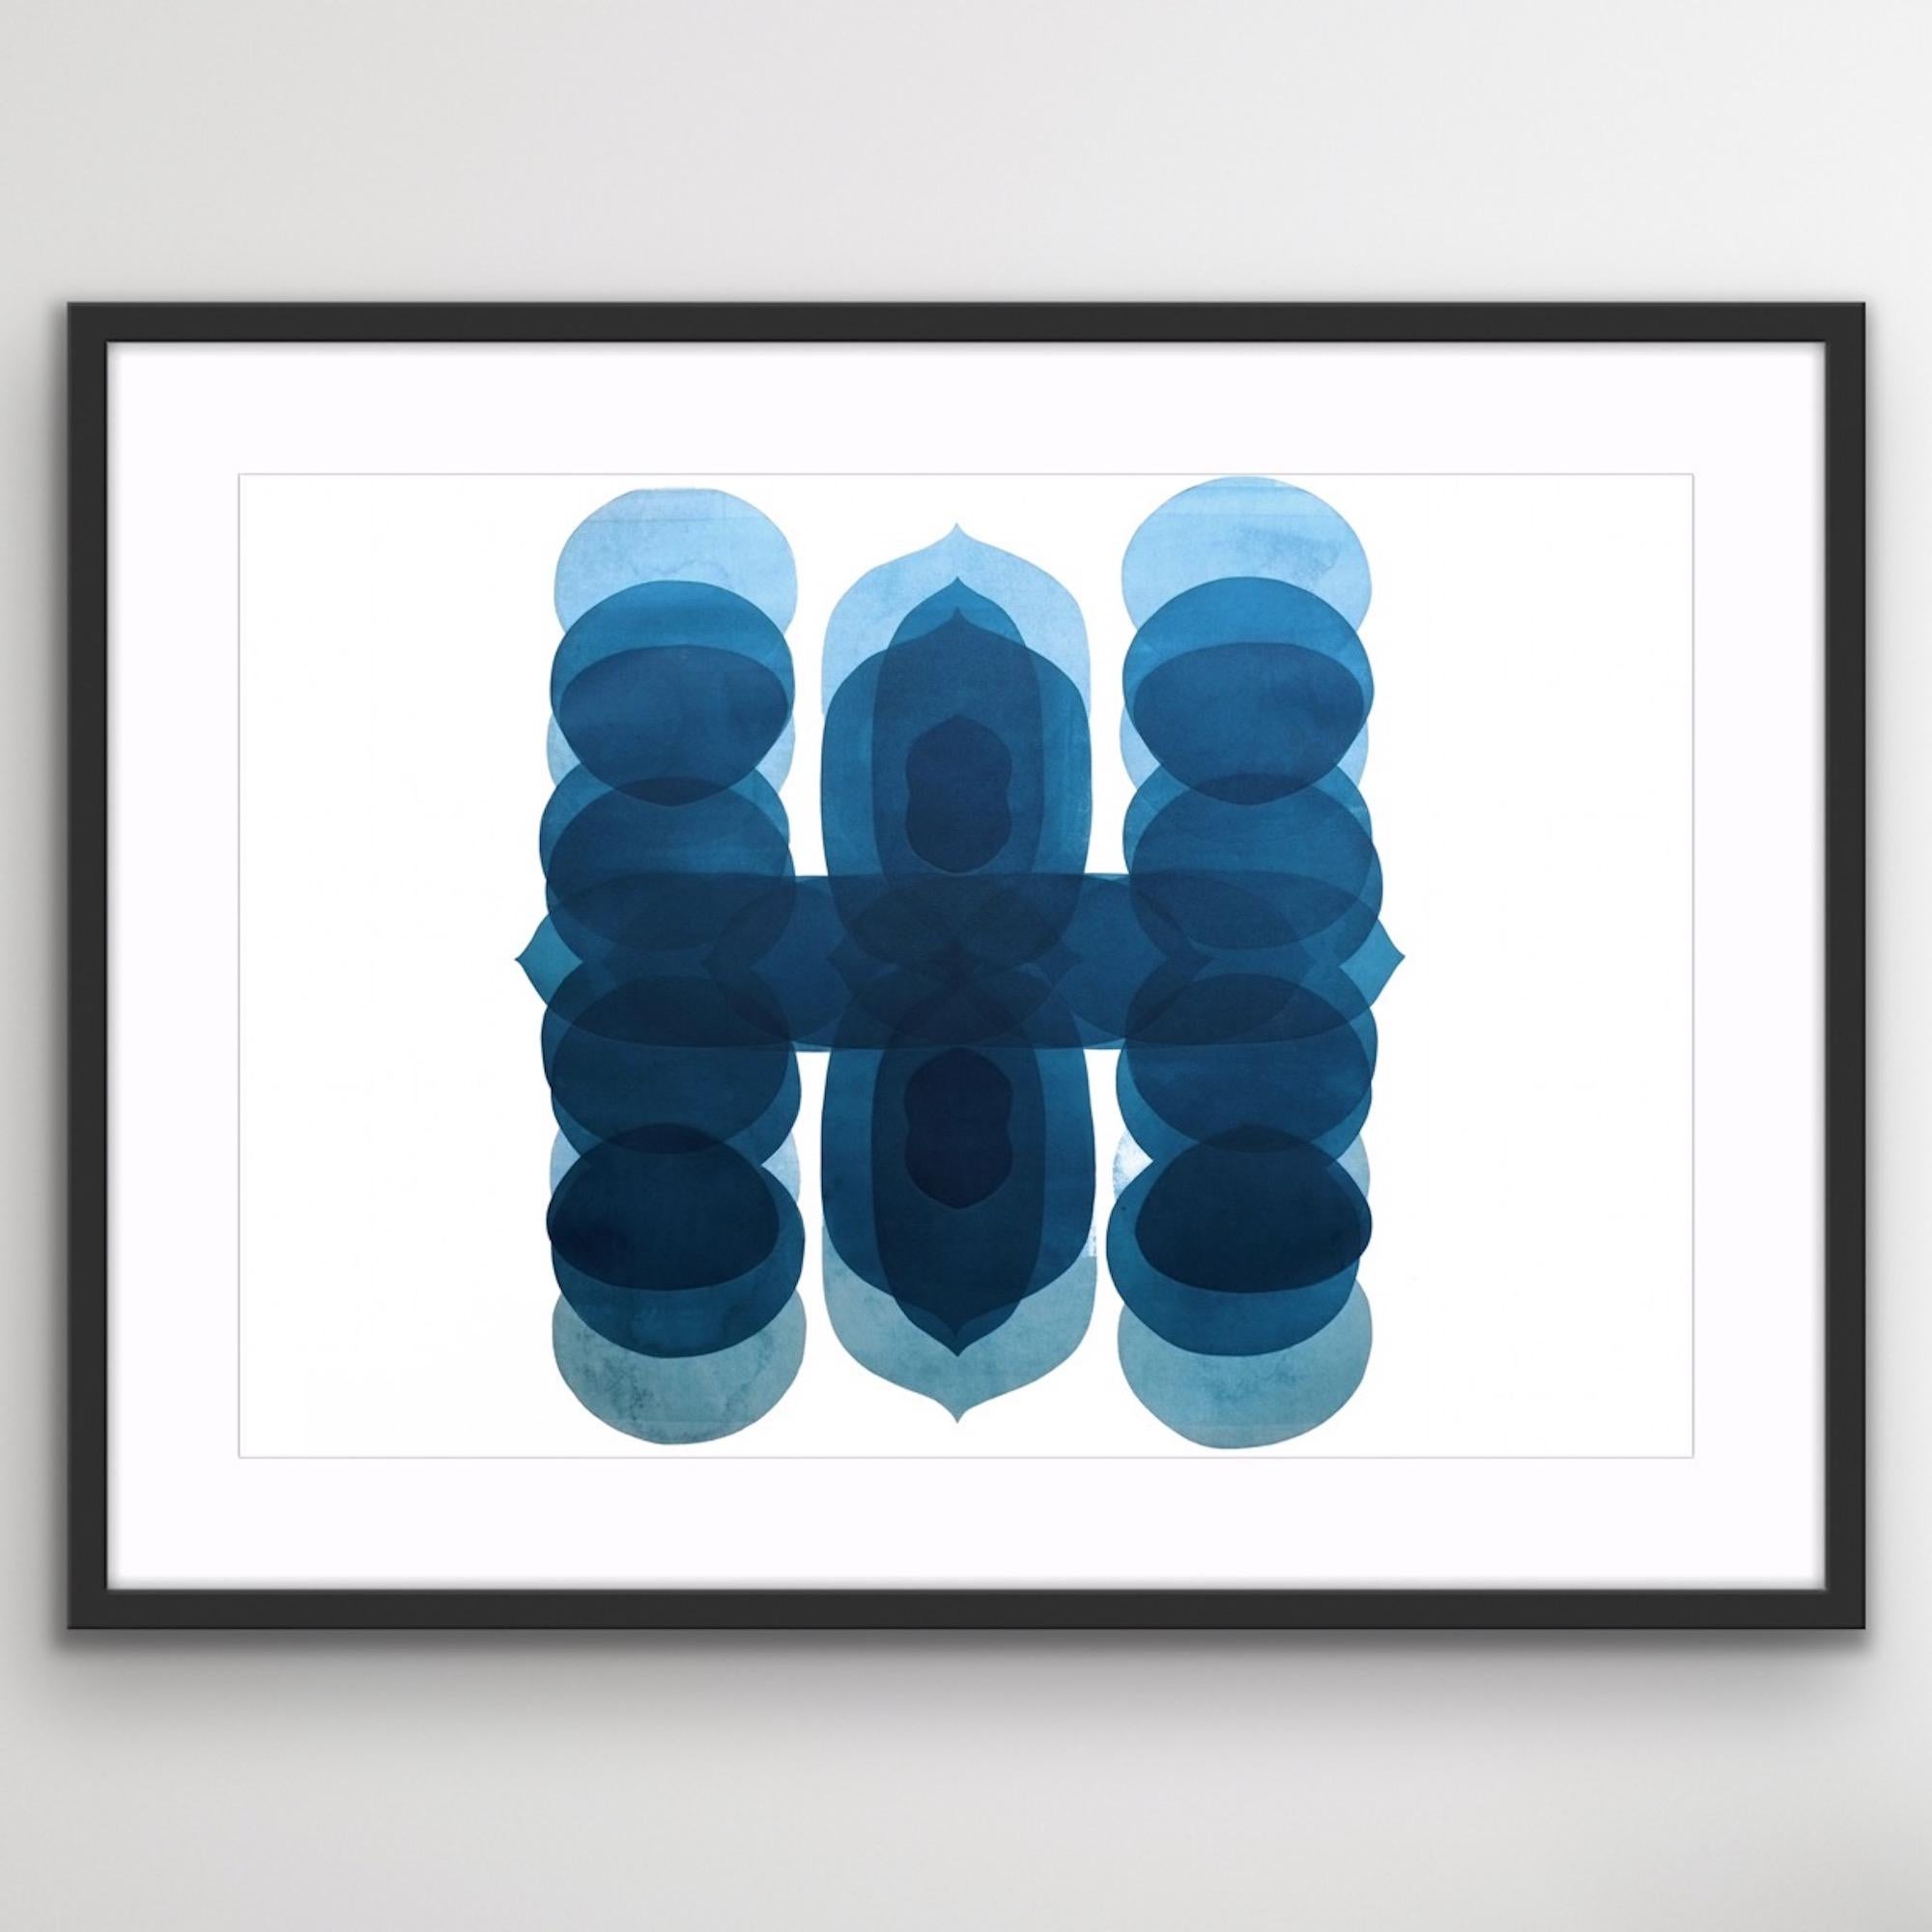 NV5, Impression abstraite minimaliste, œuvre d'art contemporaine unique en bleu et blanc - Minimaliste Painting par Jonathan Moss